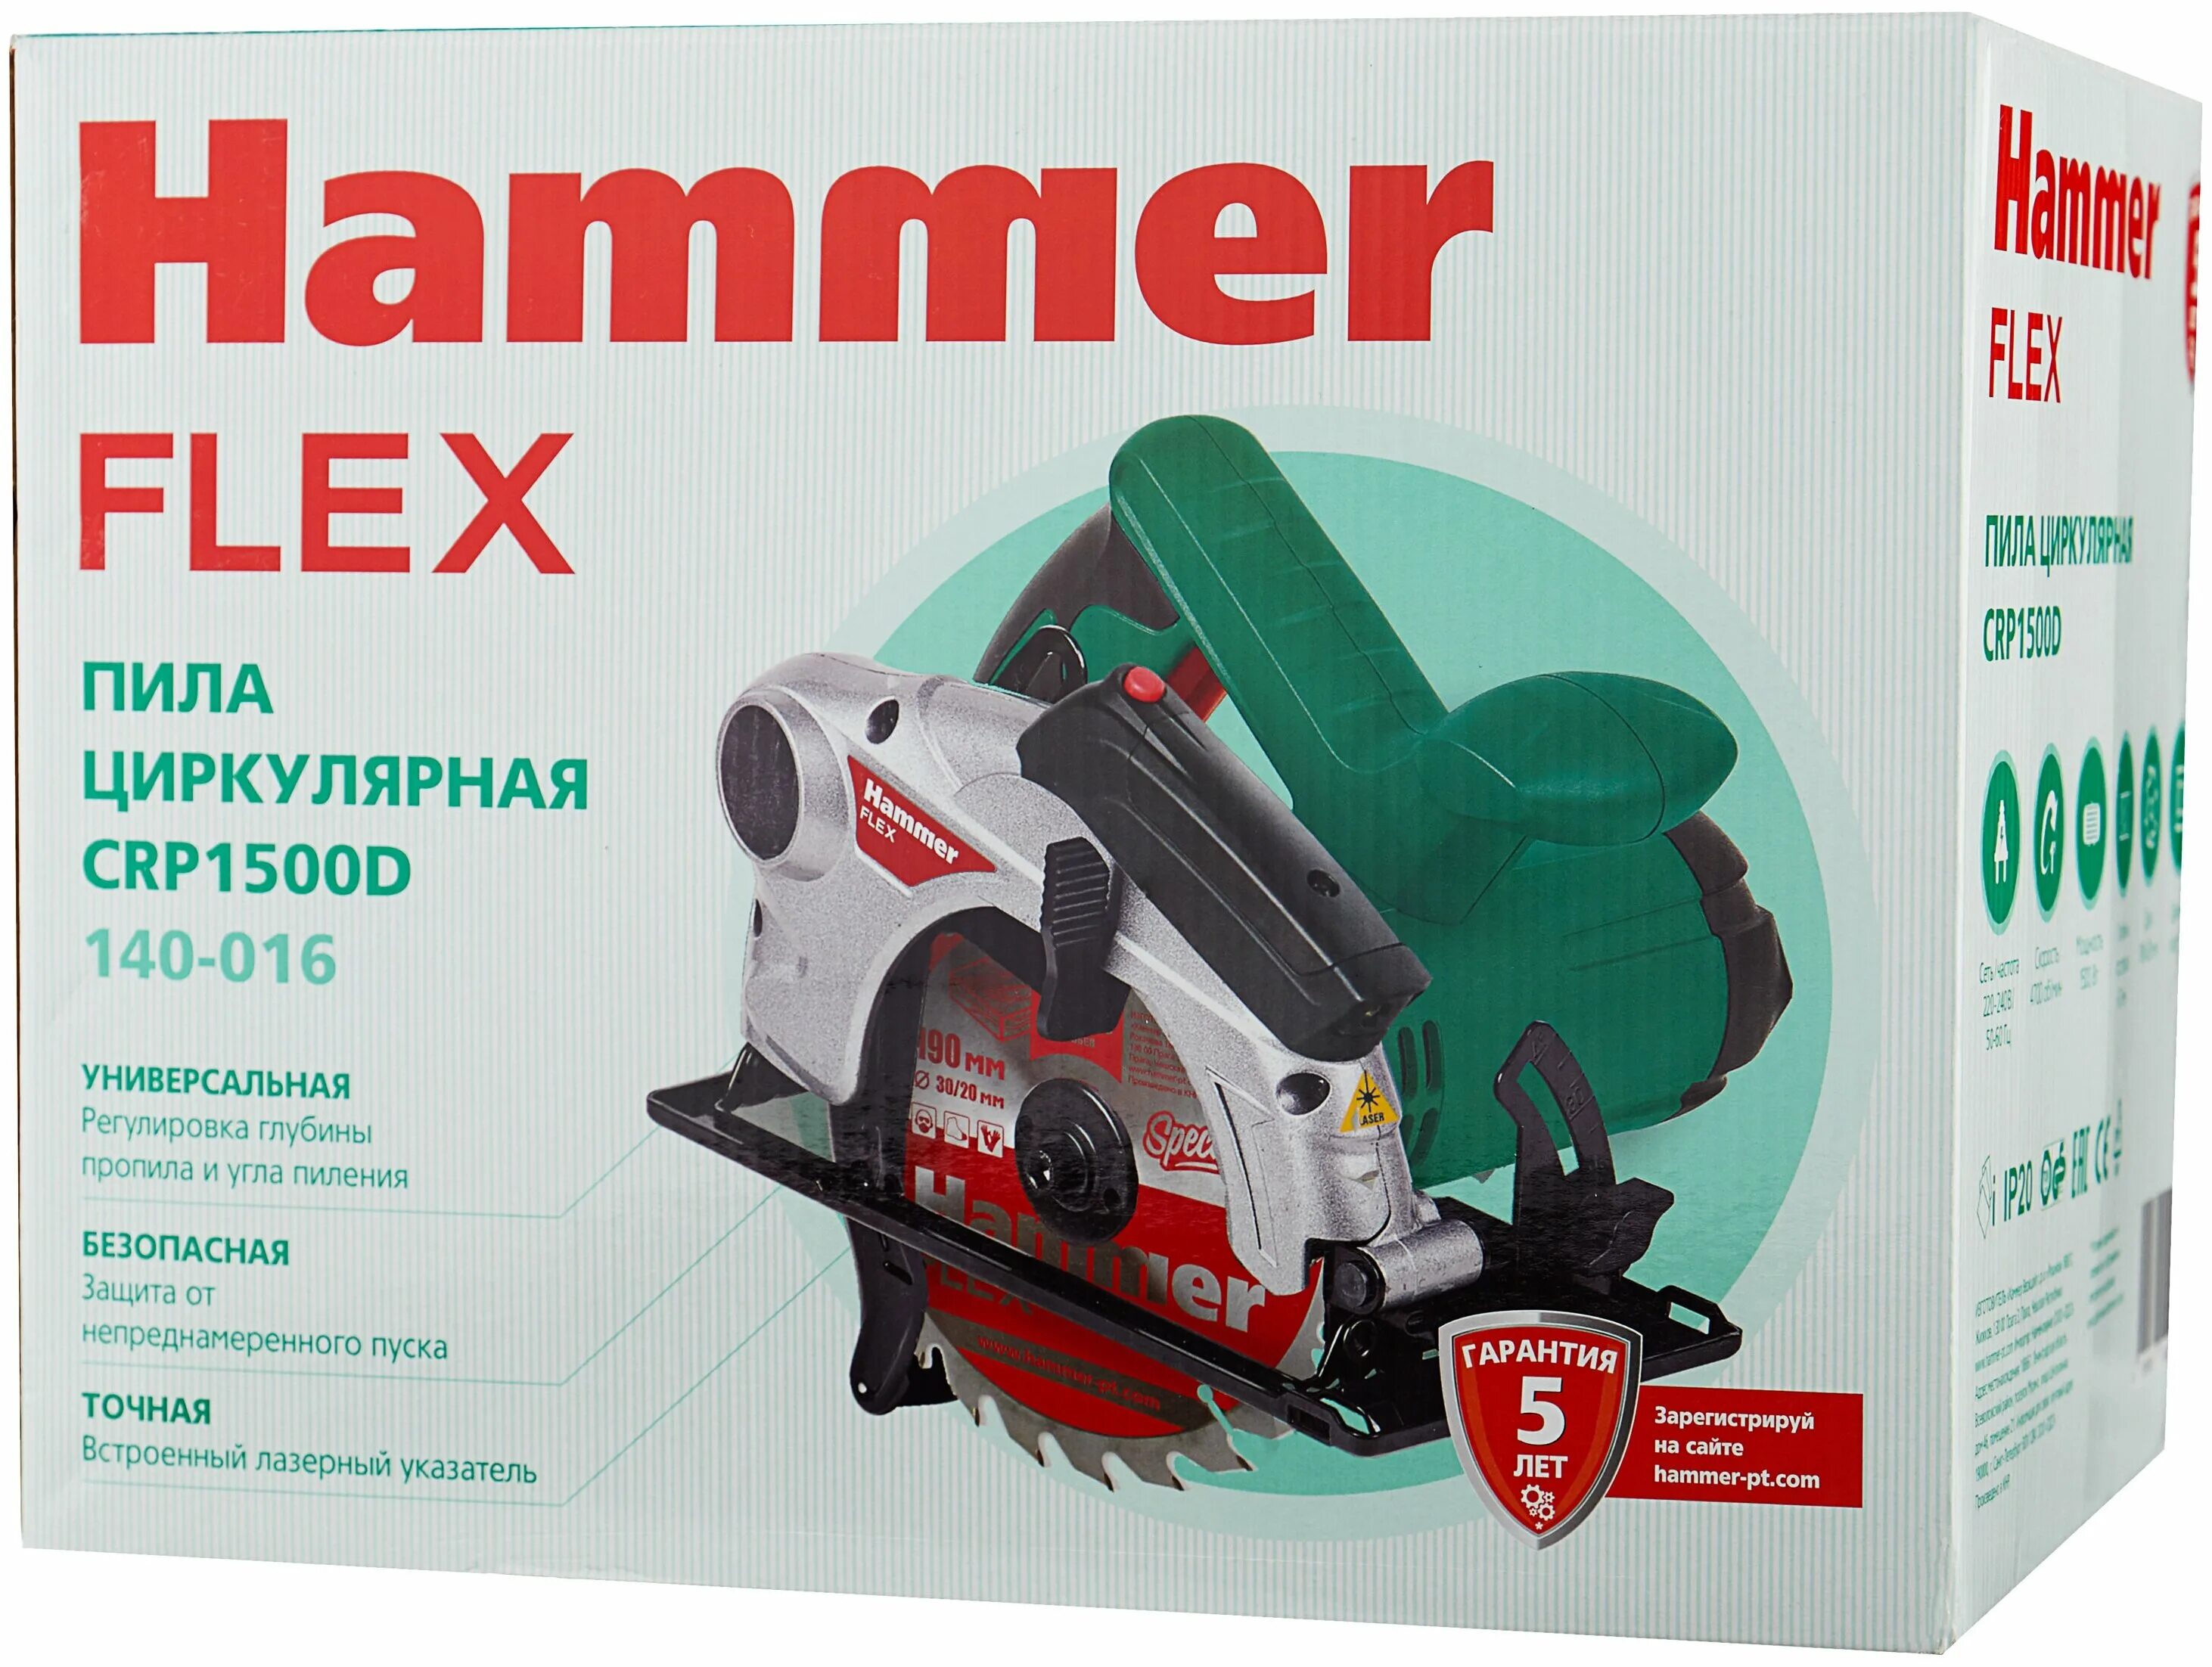 Пила циркулярная hammer crp1500d. Hammer crp1500d. Hammer Flex crp1500d. Дисковая пила Hammer CRP 1500 D, 1500 Вт.